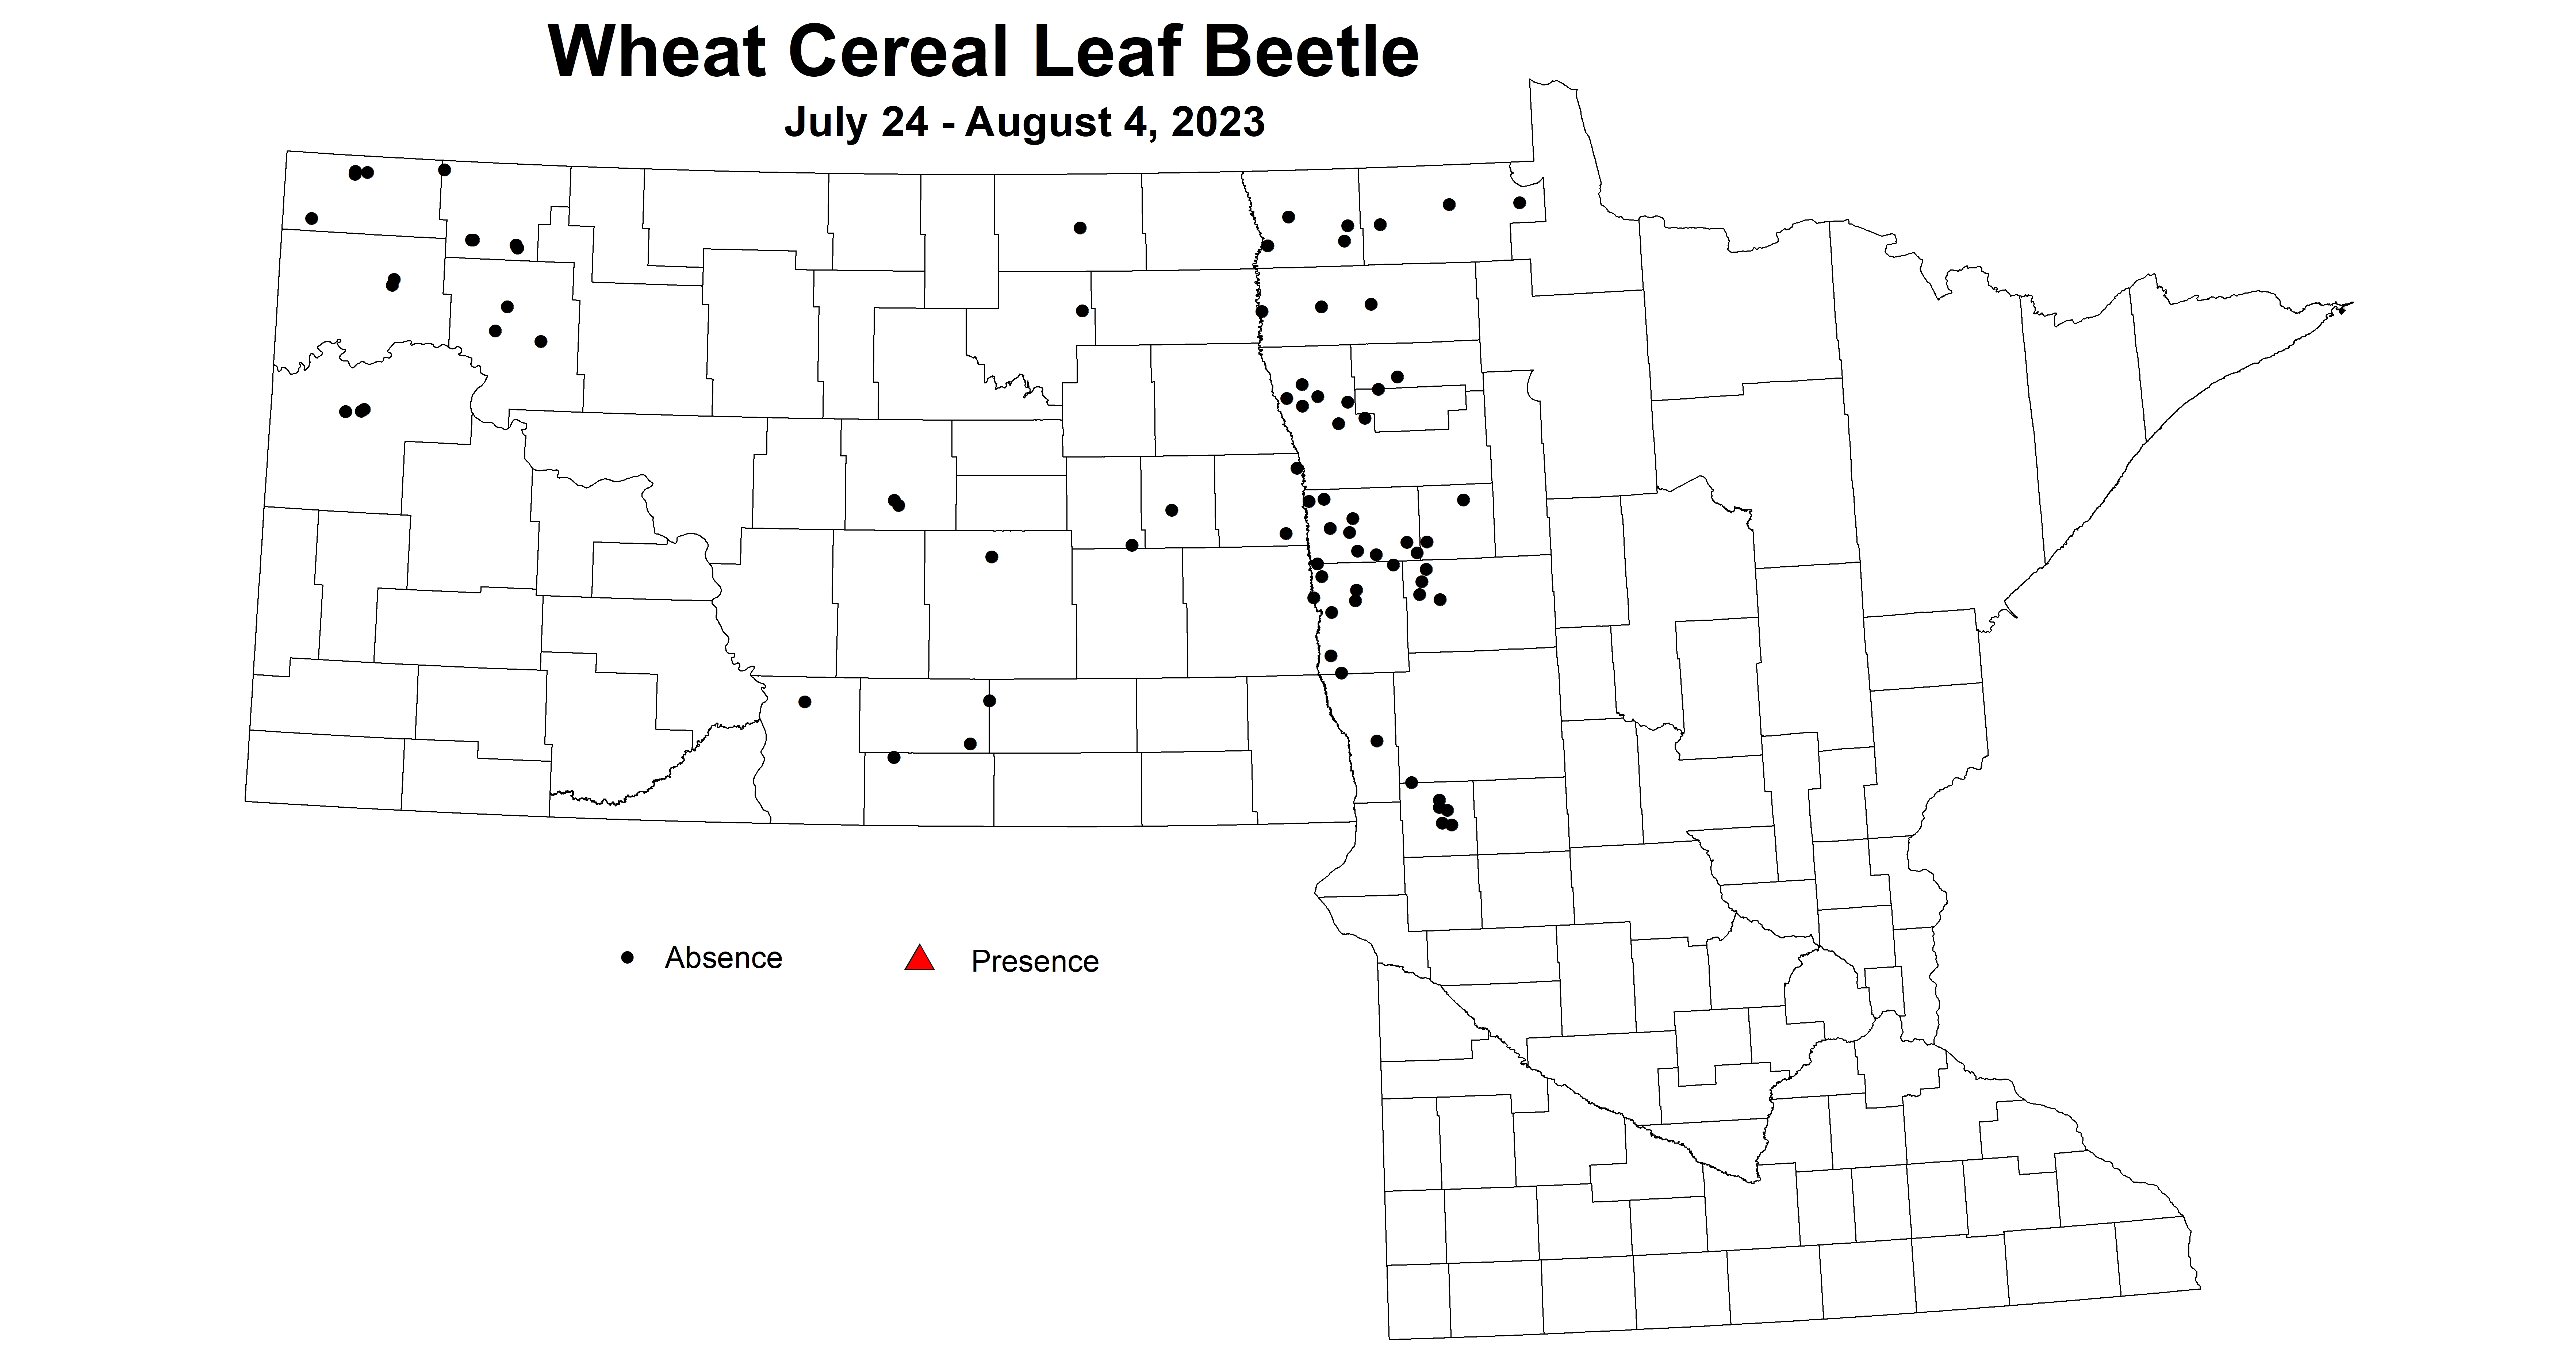 wheat cereal leaf beetle 7.24-8.4 2023